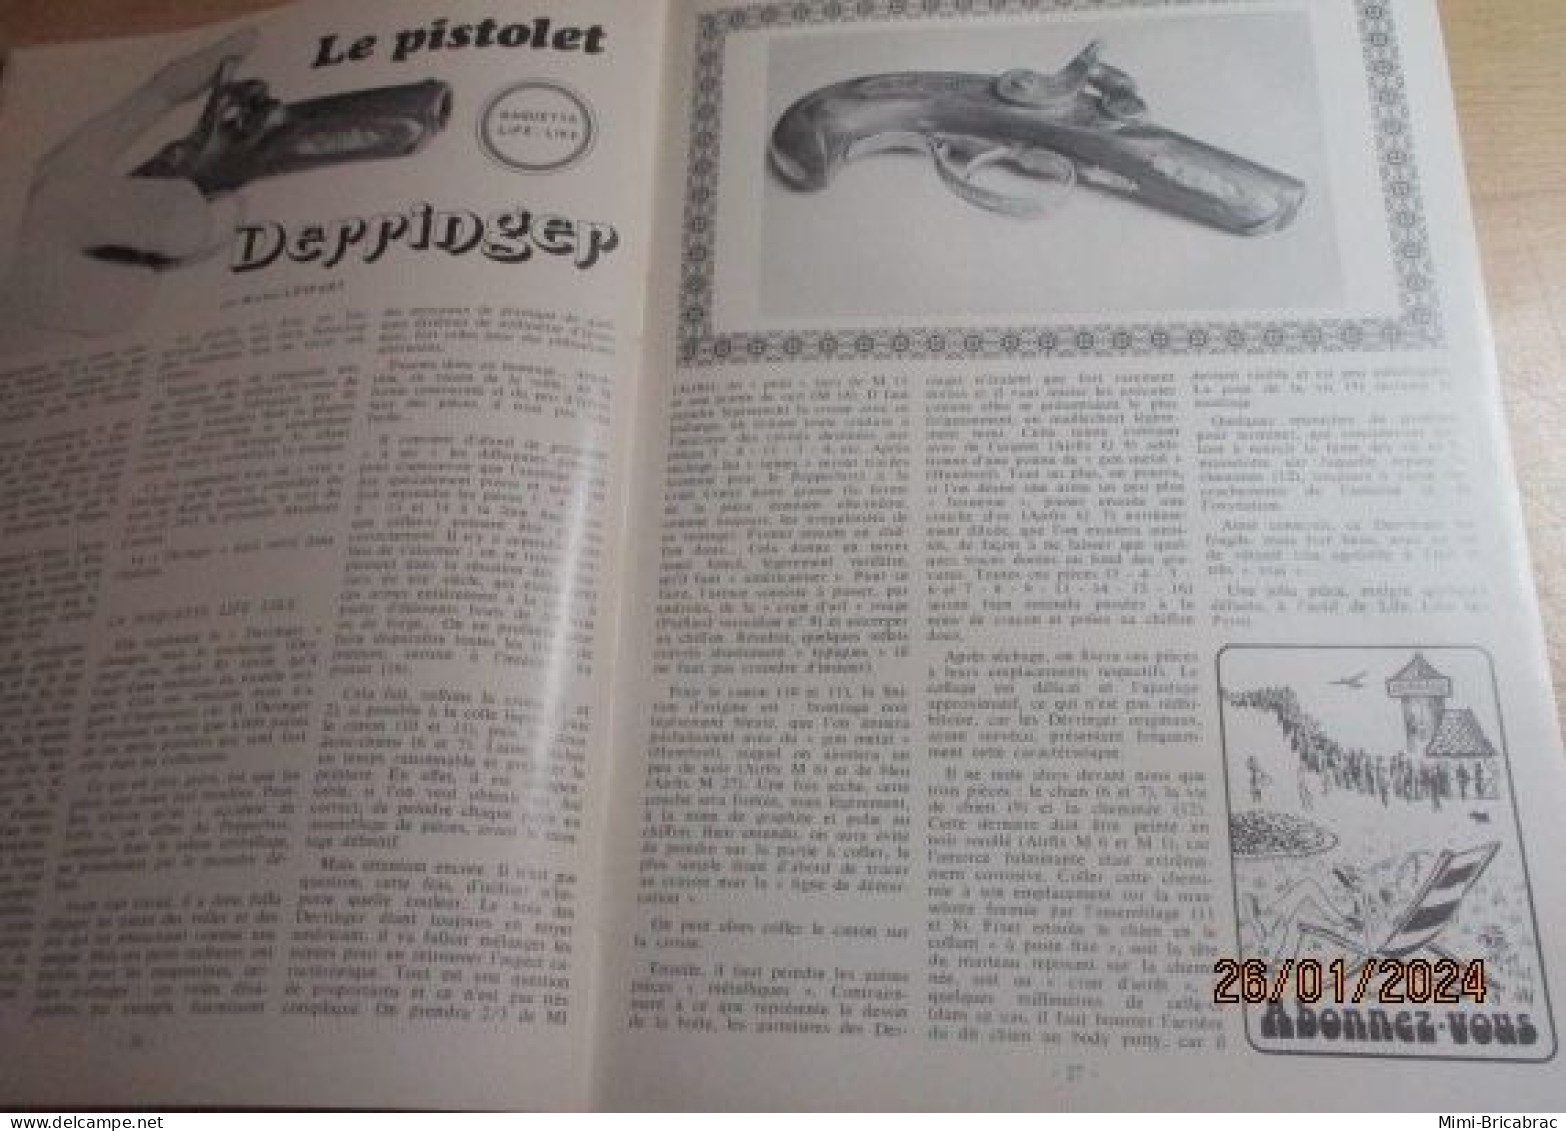 CAGI 1e Revue de maquettisme plastique années 60/70 : MPM n°42 de 1974 très bon état ! Sommaire en photo 2 ou 3